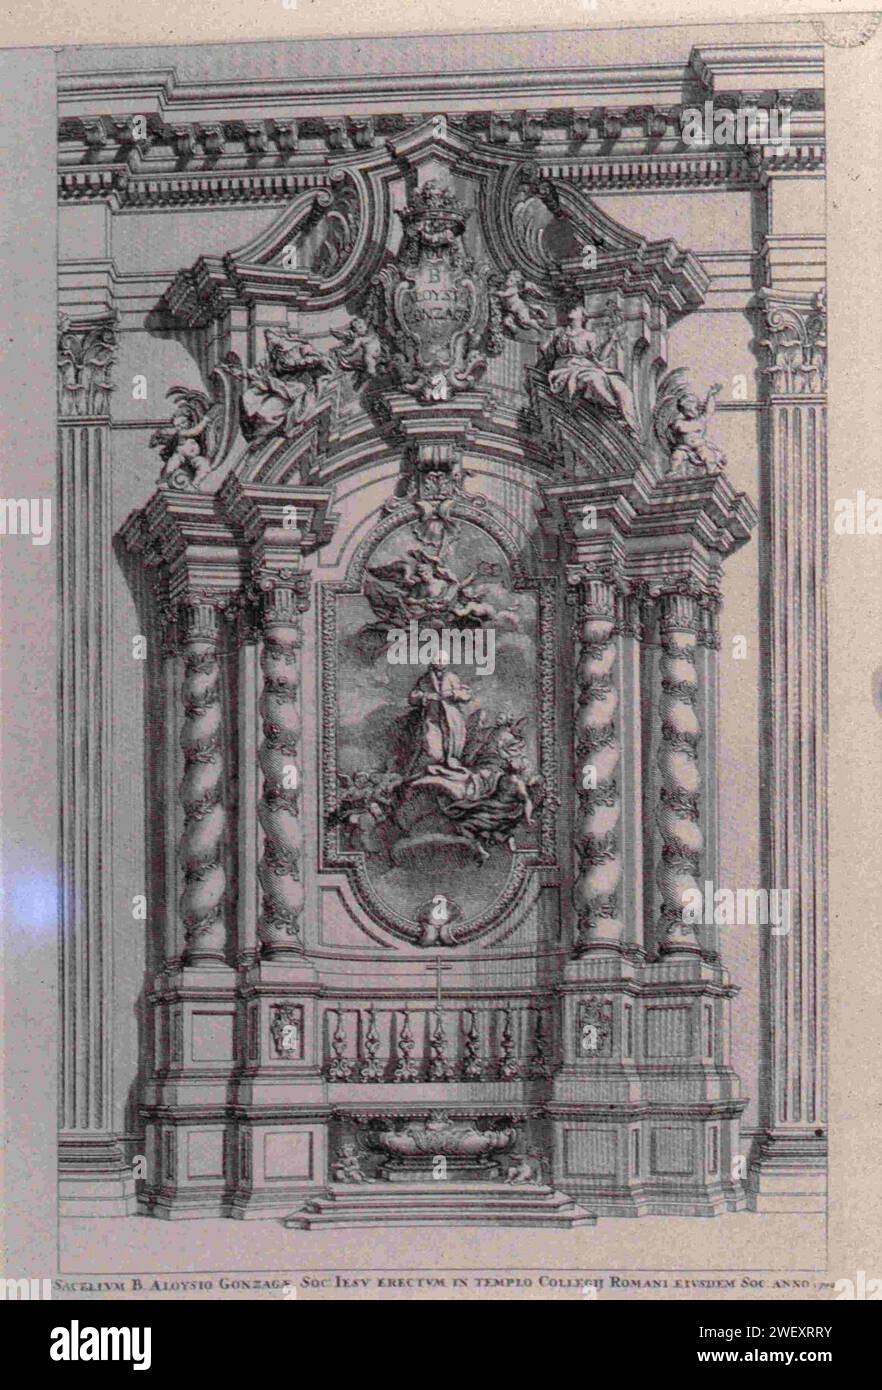 Altare del Beato Luigi Gonzaga nella chiesa di Sant'Ignazio a Roma, 1700 - Archivio Accademia delle Scienze Torino, Millon 49 18 254. Foto Stock